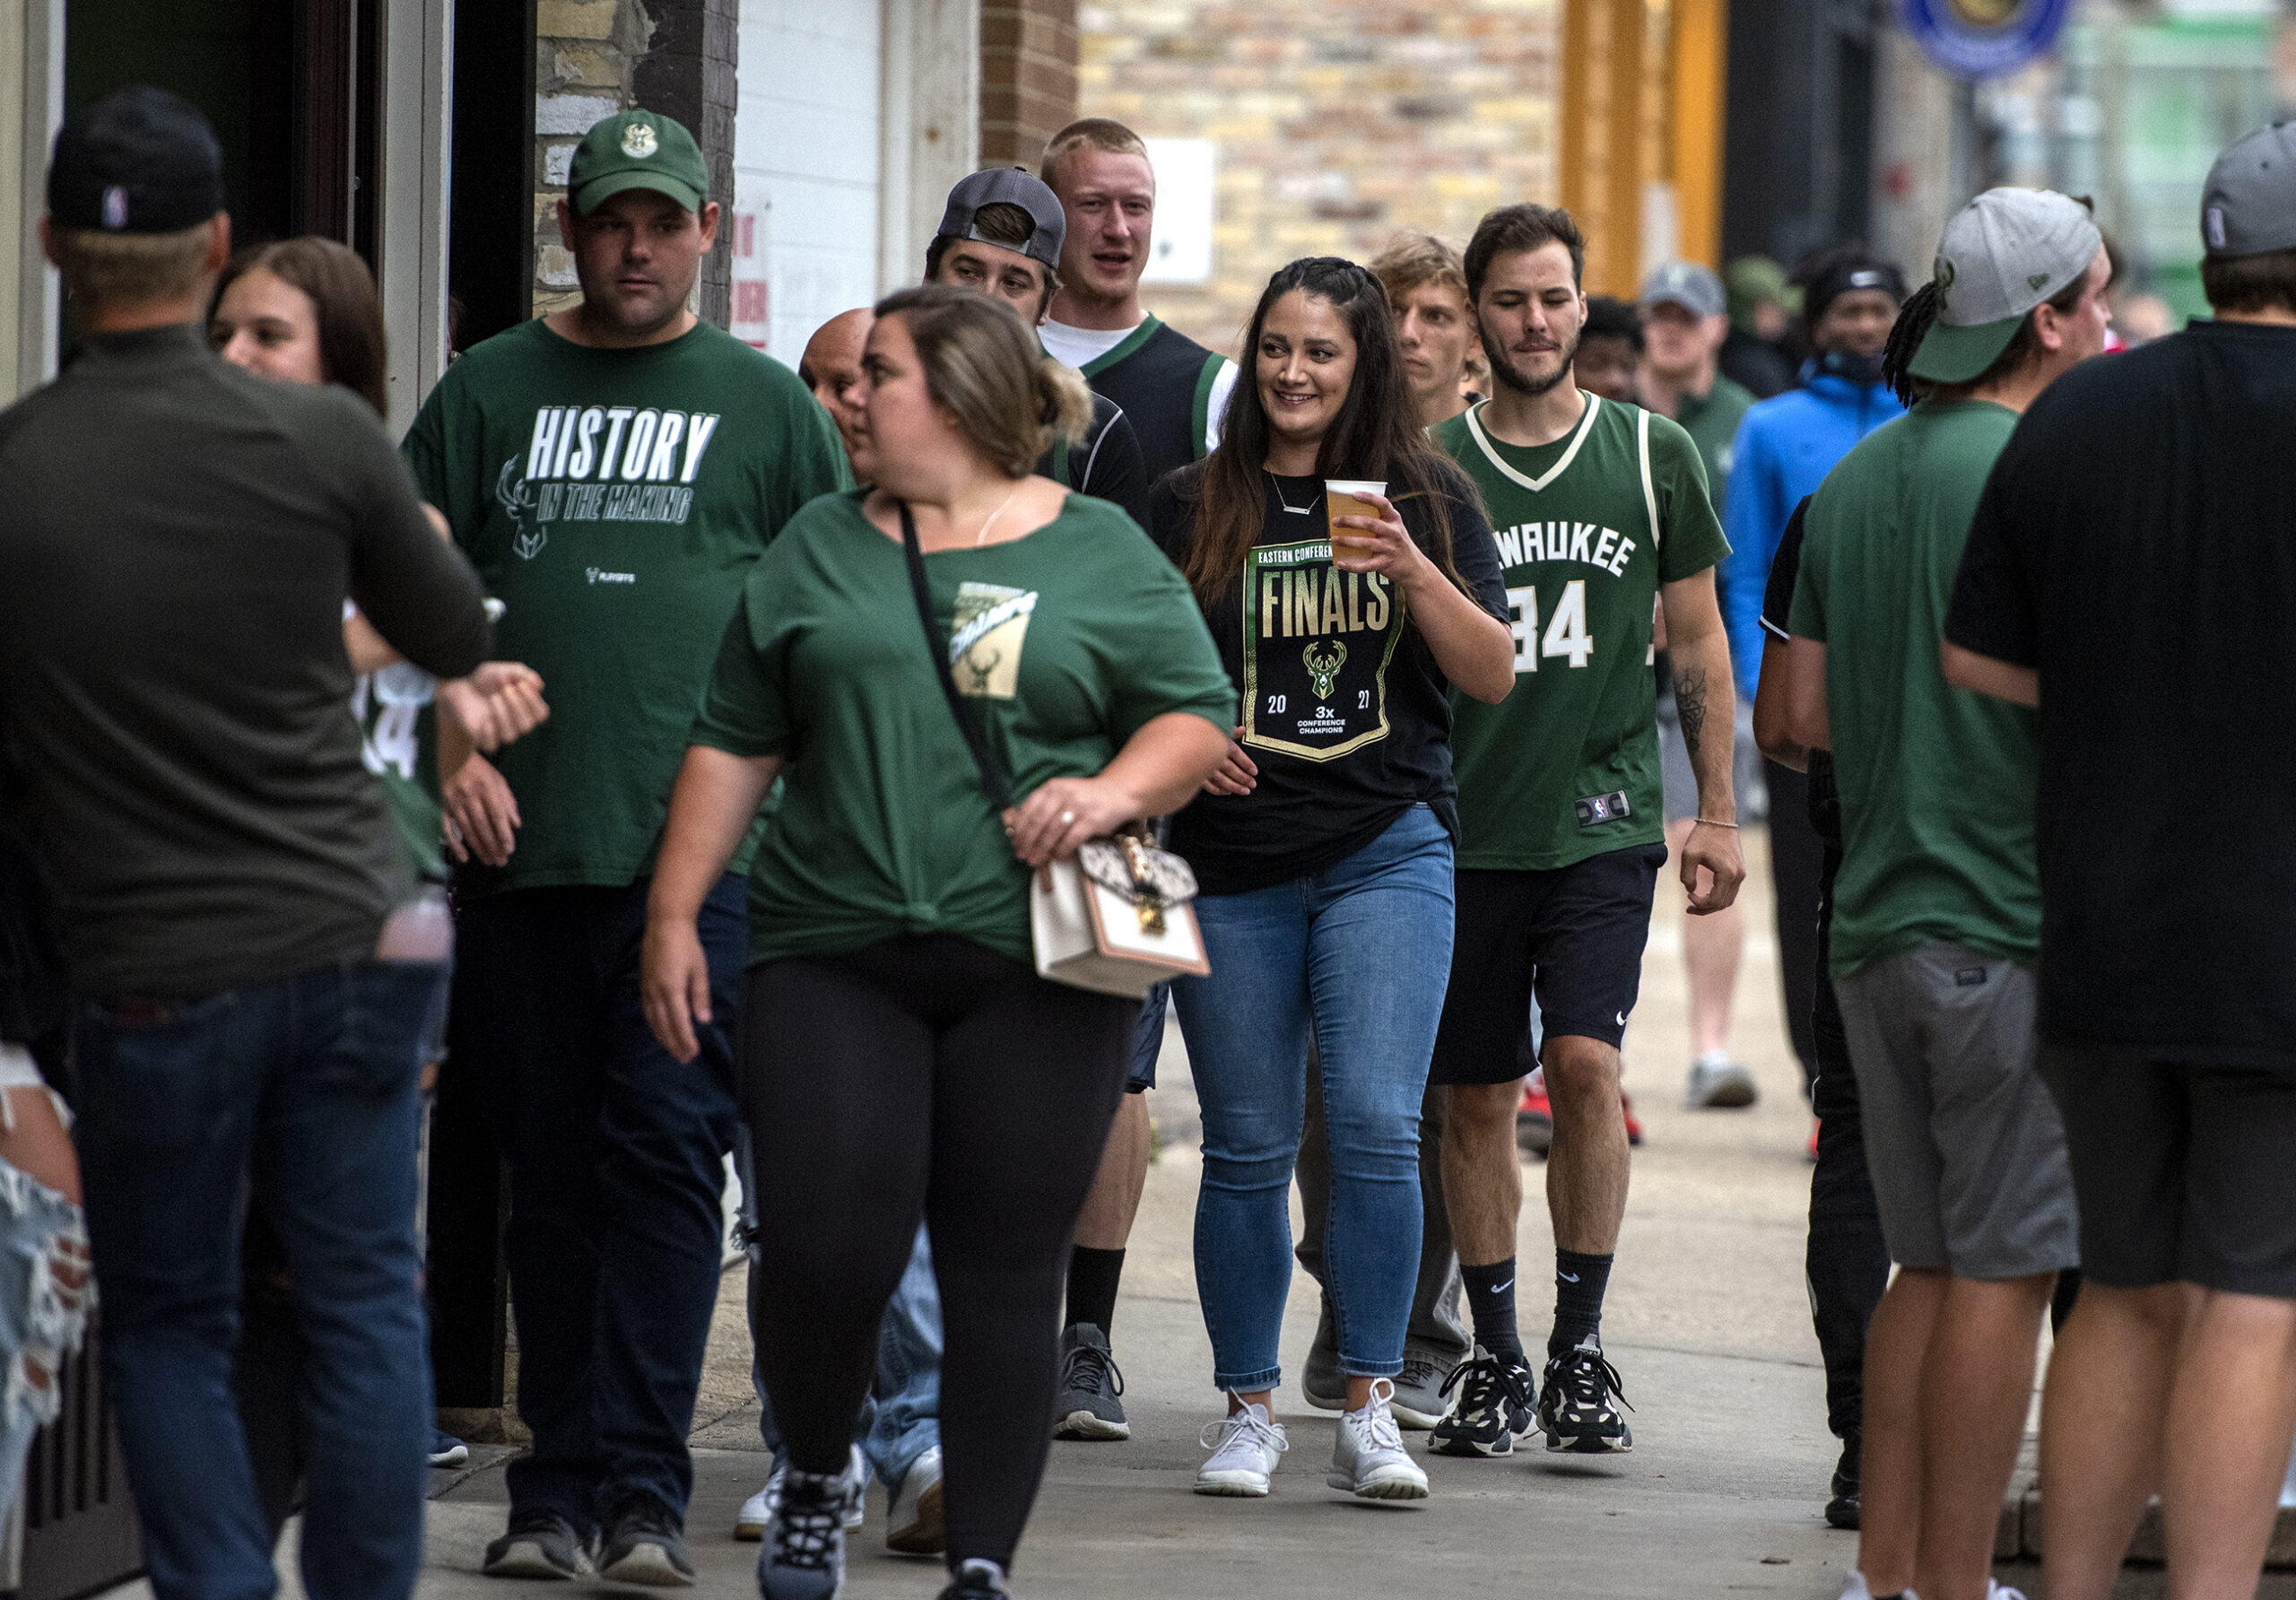 Fans in green Bucks jerseys drink beer as they walk outside.